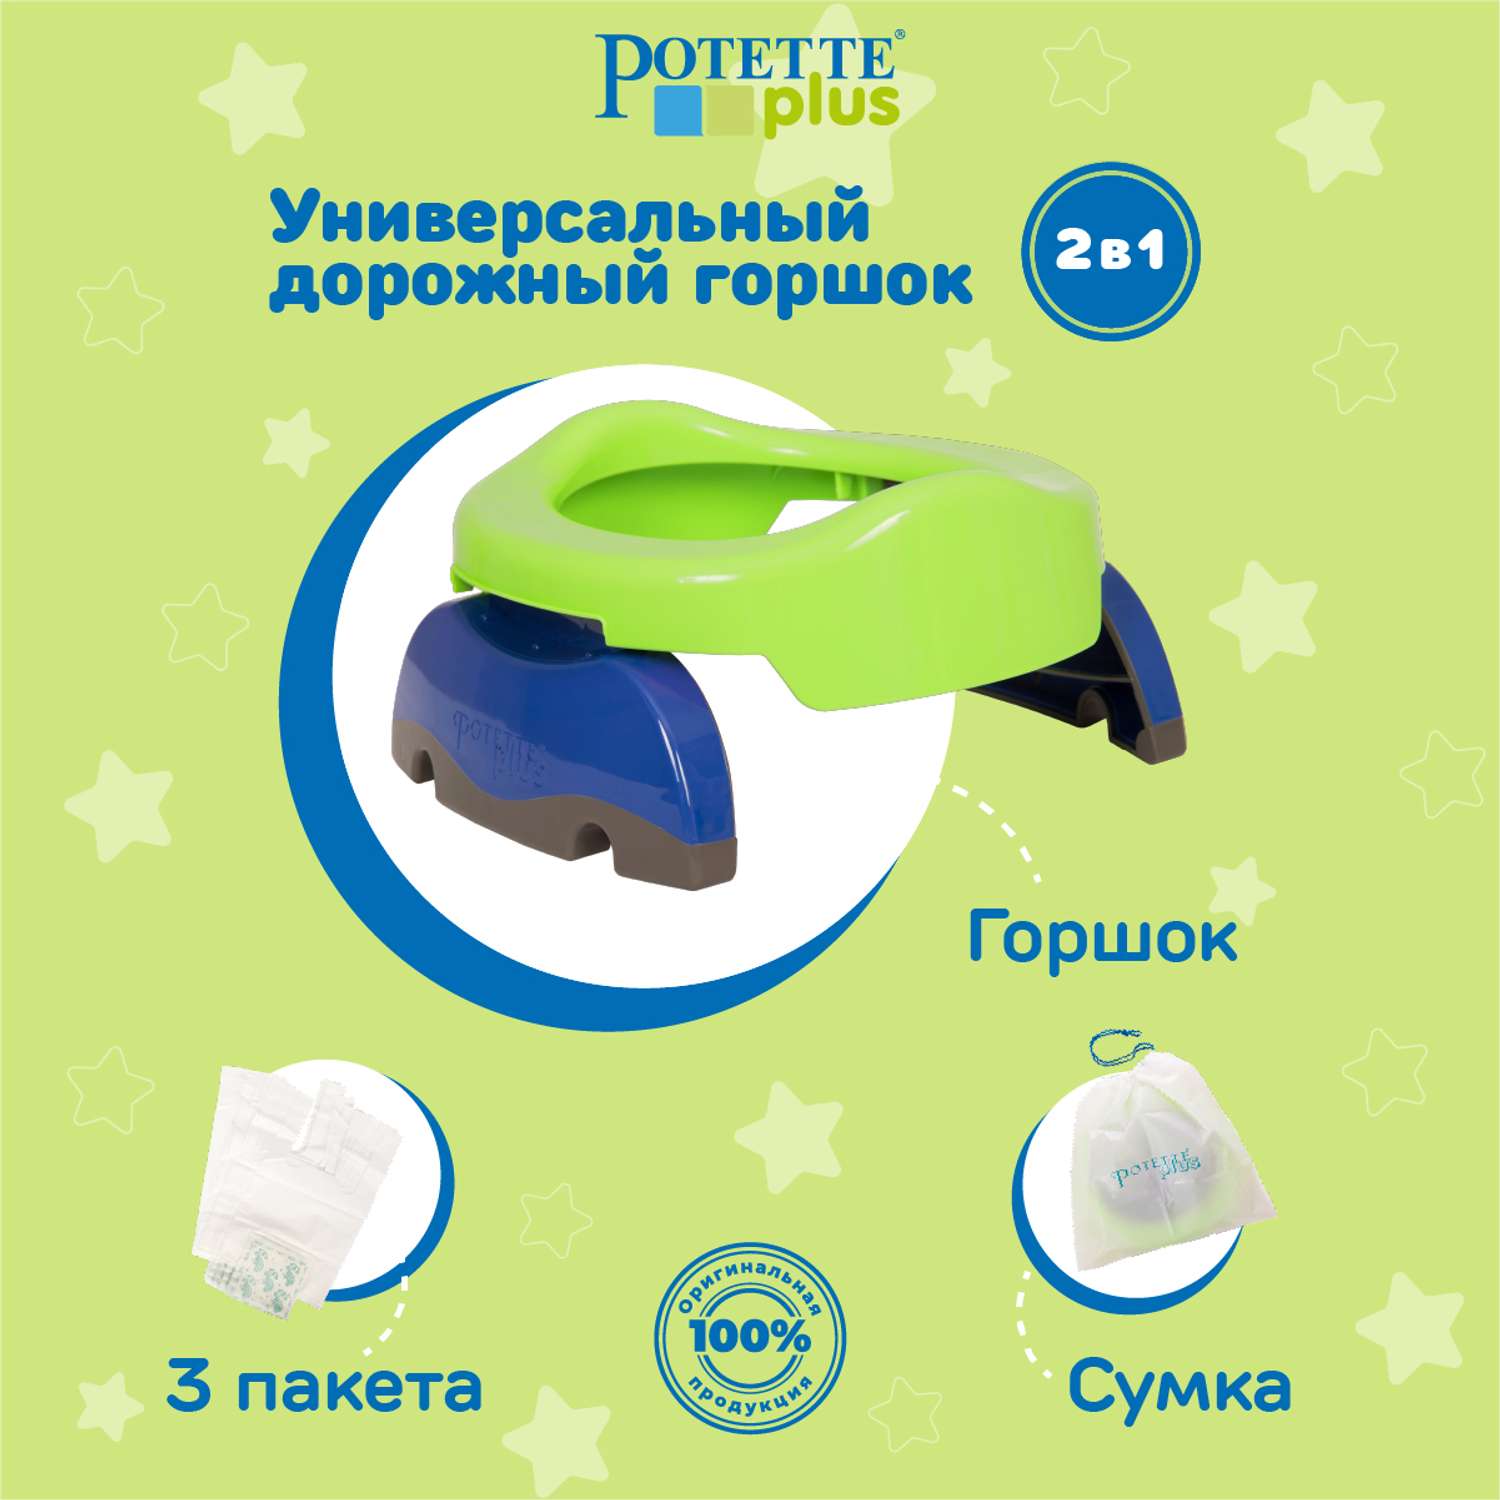 Дорожный горшок Potette Plus складной + 3 одноразовых пакета зеленый/голубой - фото 2